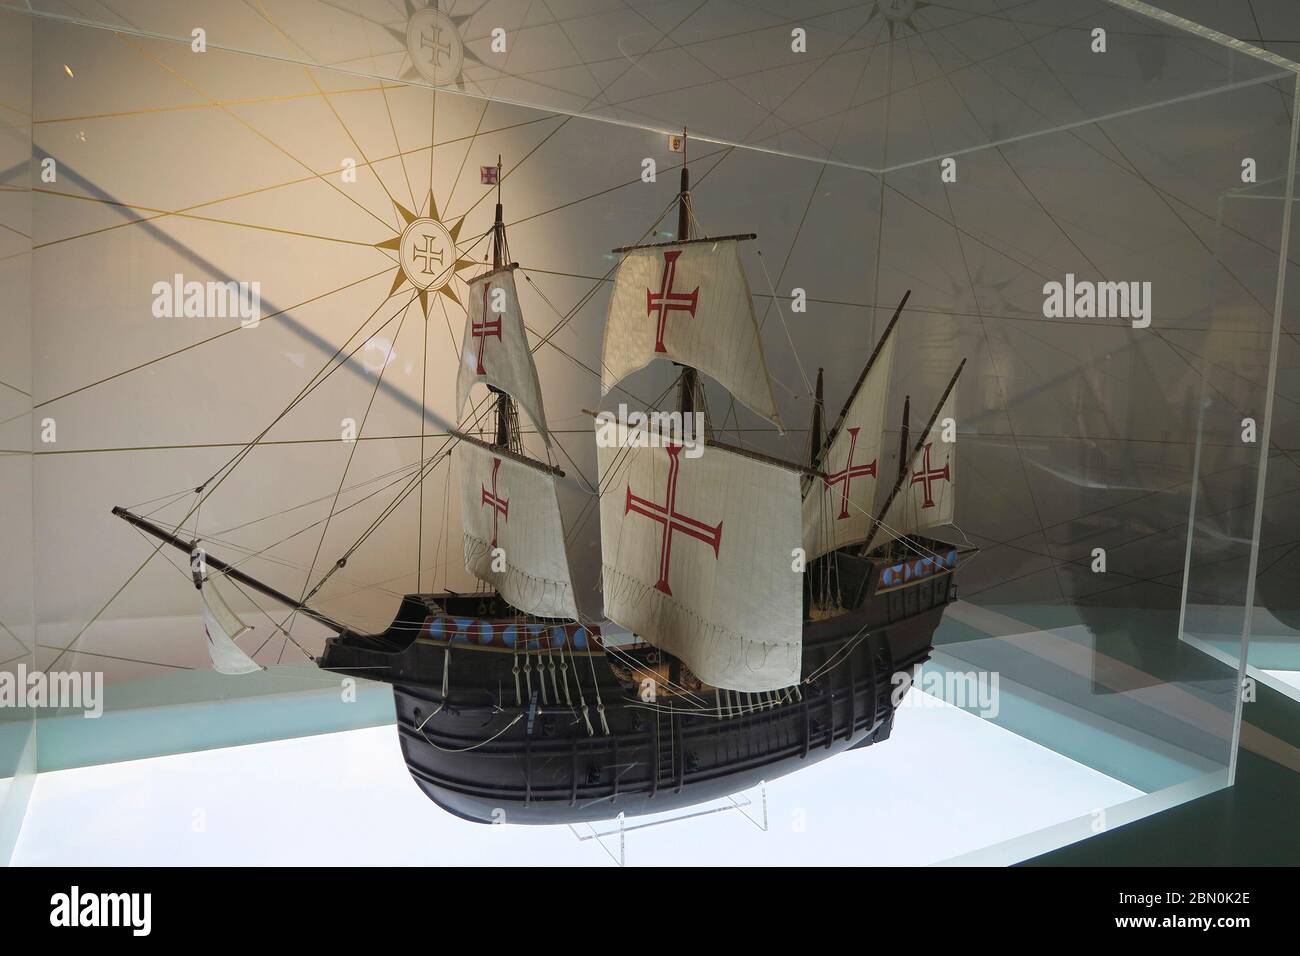 Replica in miniatura di una barca a vela Nau al museo interattivo World of Discoveries dedicato alle scoperte portoghesi a Porto, Portogallo Foto Stock